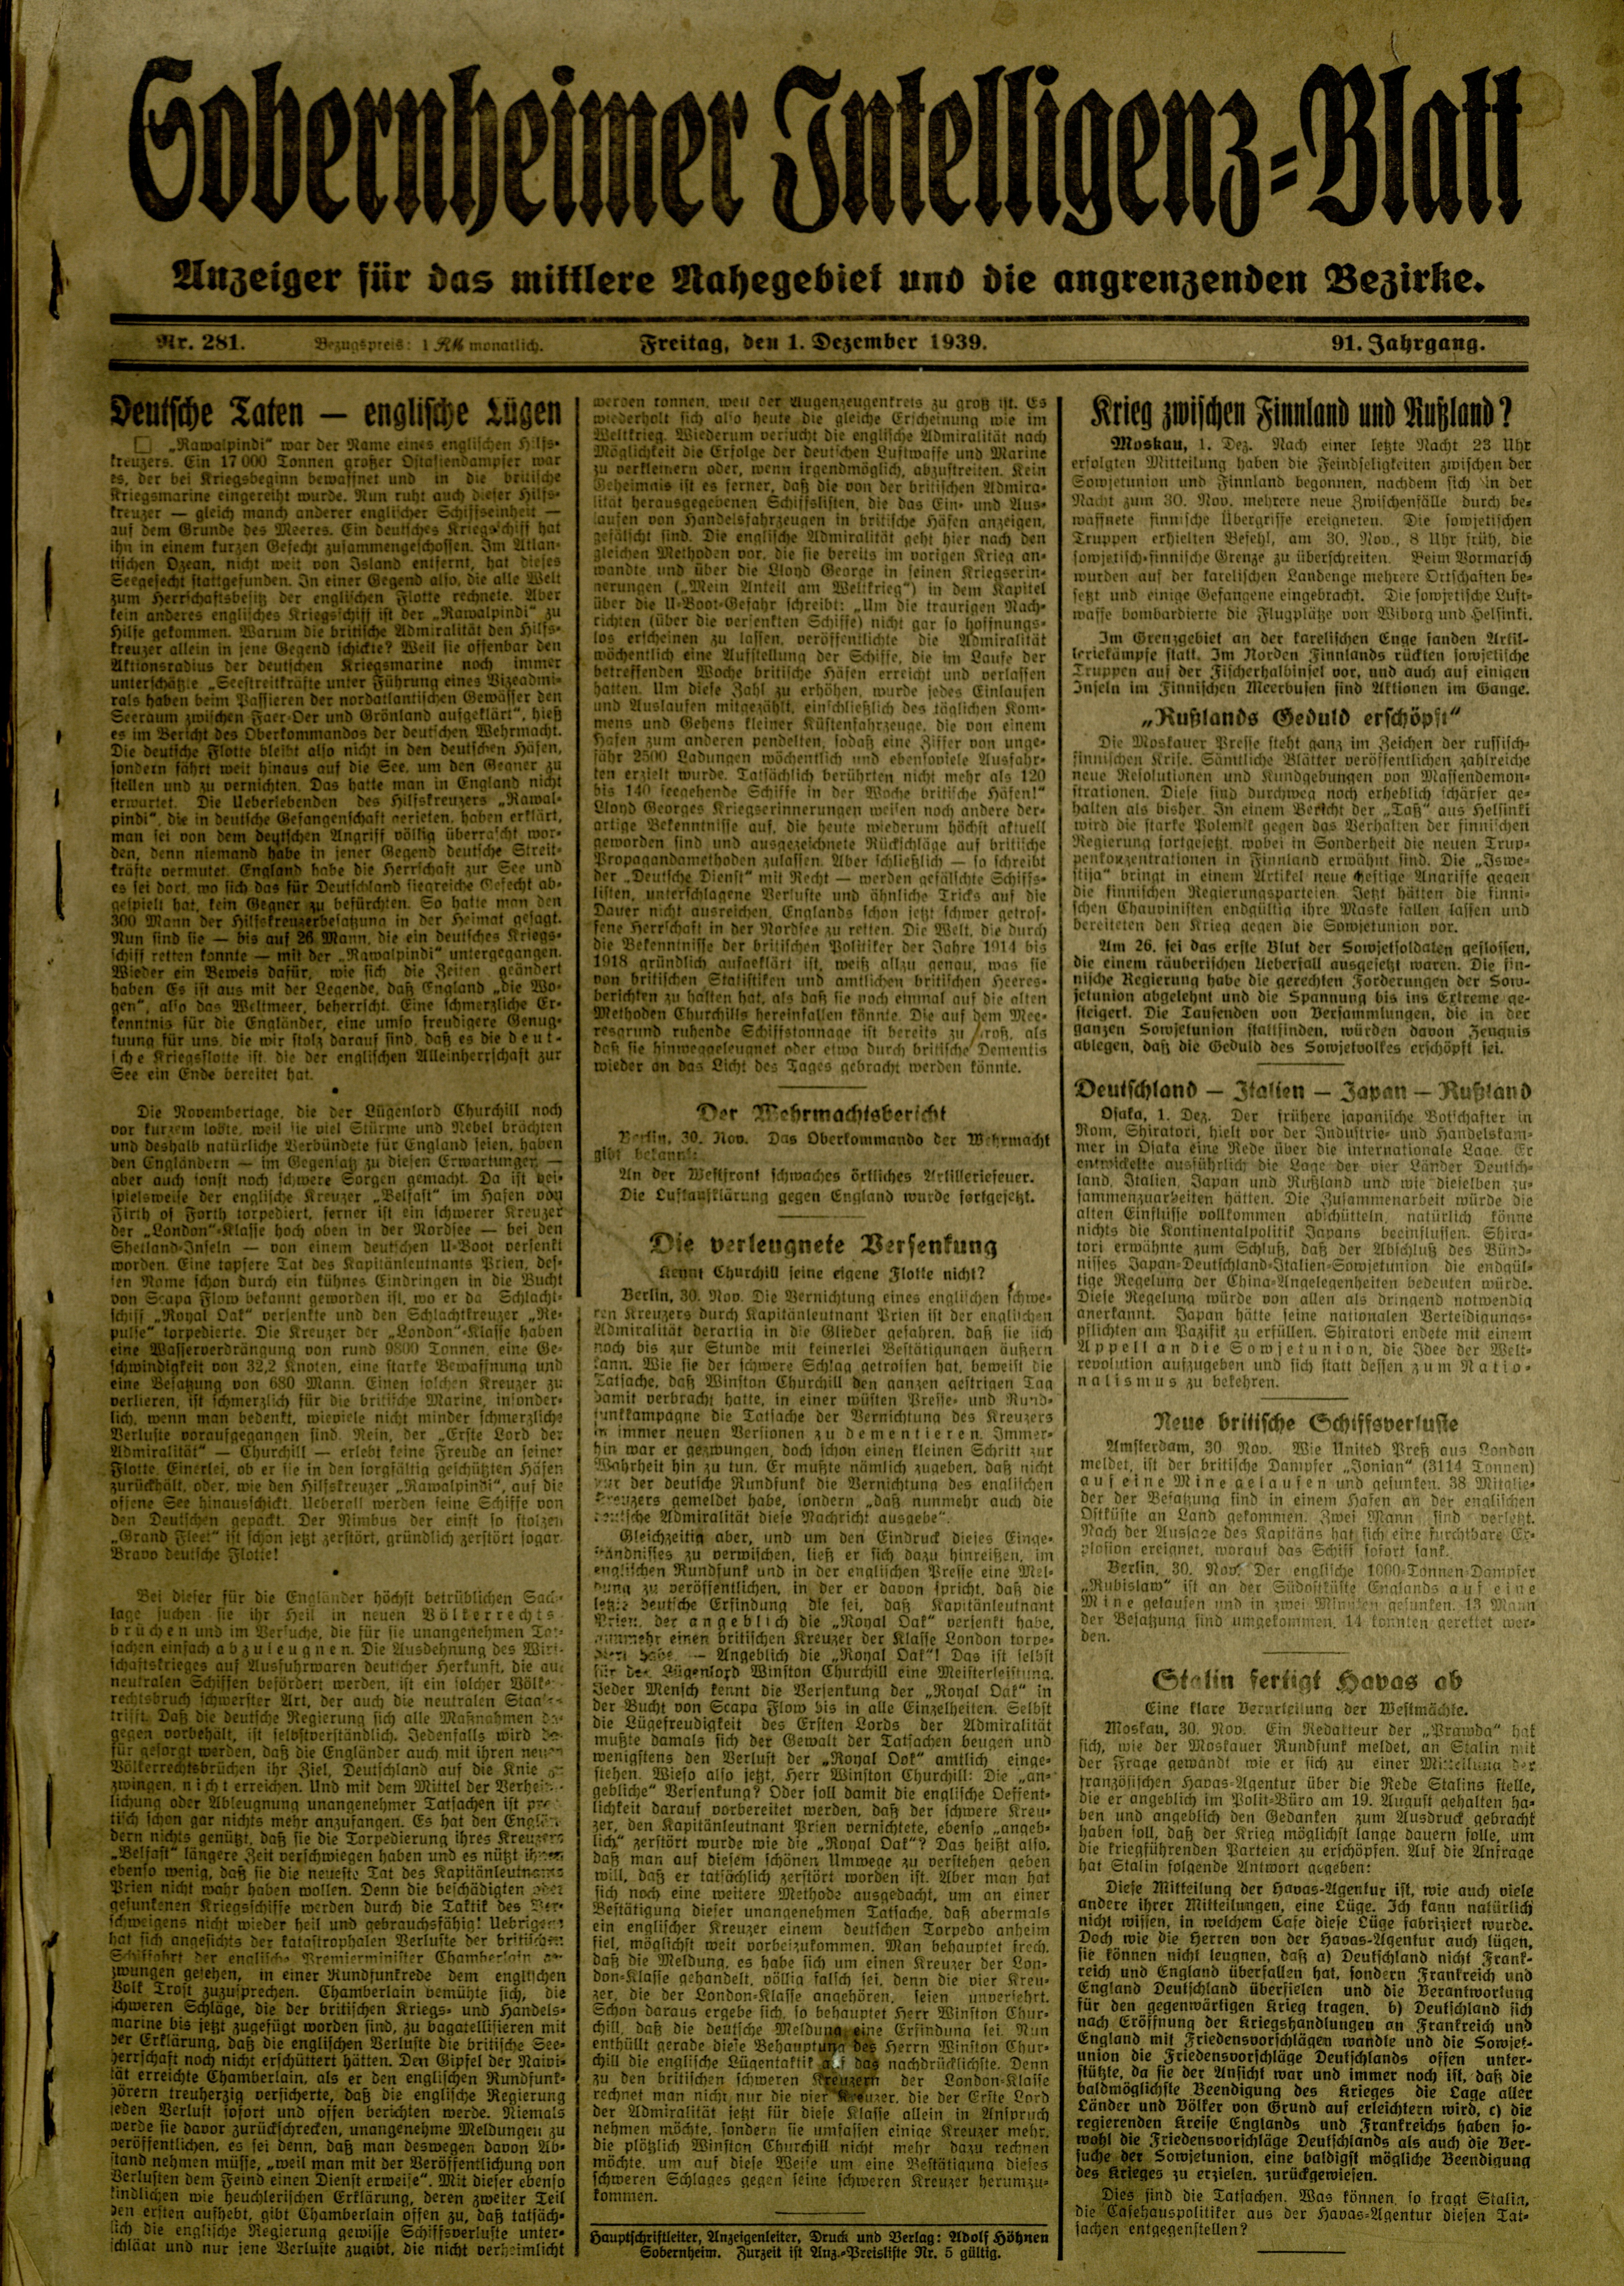 Zeitung: Sobernheimer Intelligenzblatt; Dezember 1939, Jg. 91 Nr. 281 (Heimatmuseum Bad Sobernheim CC BY-NC-SA)